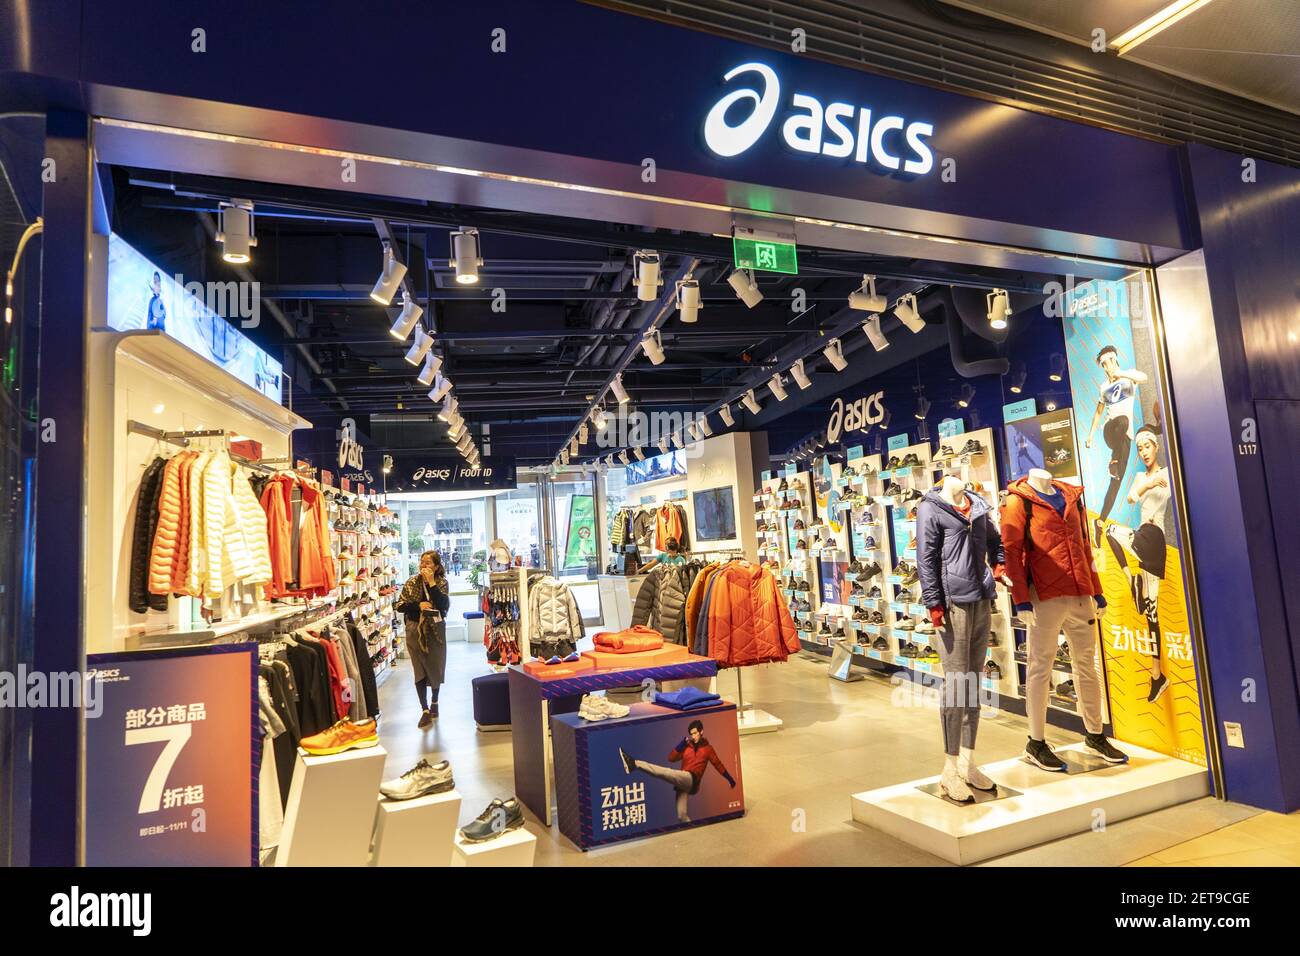 origen Floración folleto FILE--Vista de una tienda de ropa deportiva de Asics en un centro comercial  en Shanghai, China, 31 de octubre de 2018. Las marcas de moda Coach y  Givenchy se disculparon en las